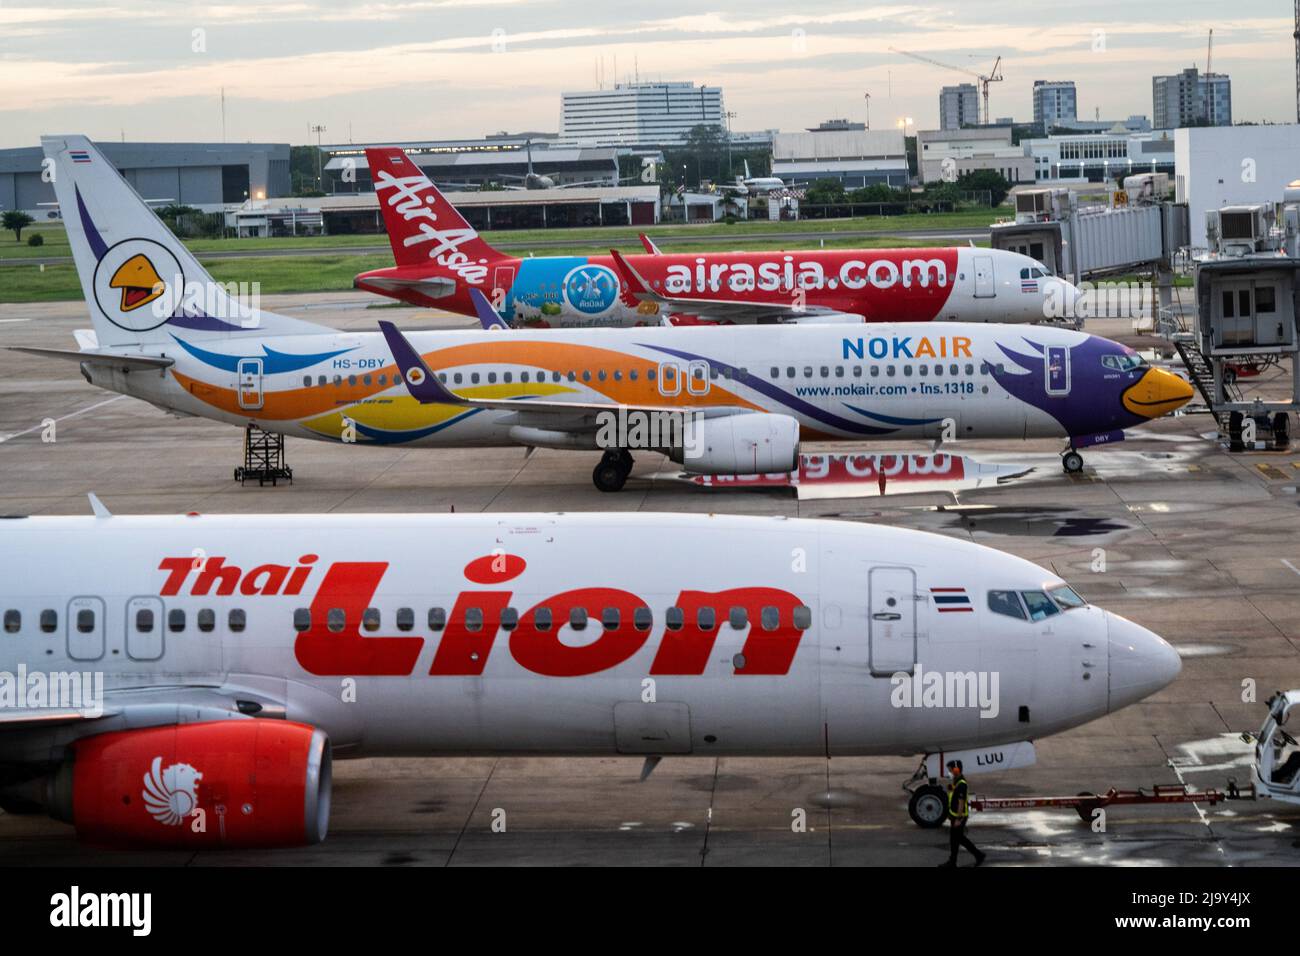 Kommerzielle Airbus A320-200-Flugzeuge für Thai AirAsia (FD), NokAir und Thai Lion werden vor den nationalen Abflugtoren am Don Mueang International Airport (DMK) in Bangkok geparkt. Internationale Reisen nach Thailand und inländischer Tourismus im Land werden wieder aufgenommen, da die thailändische Regierung die Einreisebestimmungen im Rahmen ihres Thailand Pass-Programms vereinfacht, so dass internationale Reisende das Land ohne einen schnellen PCR-Test für COVID-19 oder Quarantäne bei der Ankunft betreten können. Die thailändische Regierung hat auch signalisiert, dass die Auflage, Gesichtsmasken im Freien zu tragen, voraussichtlich Mitte Juni 2022 enden wird. Stockfoto